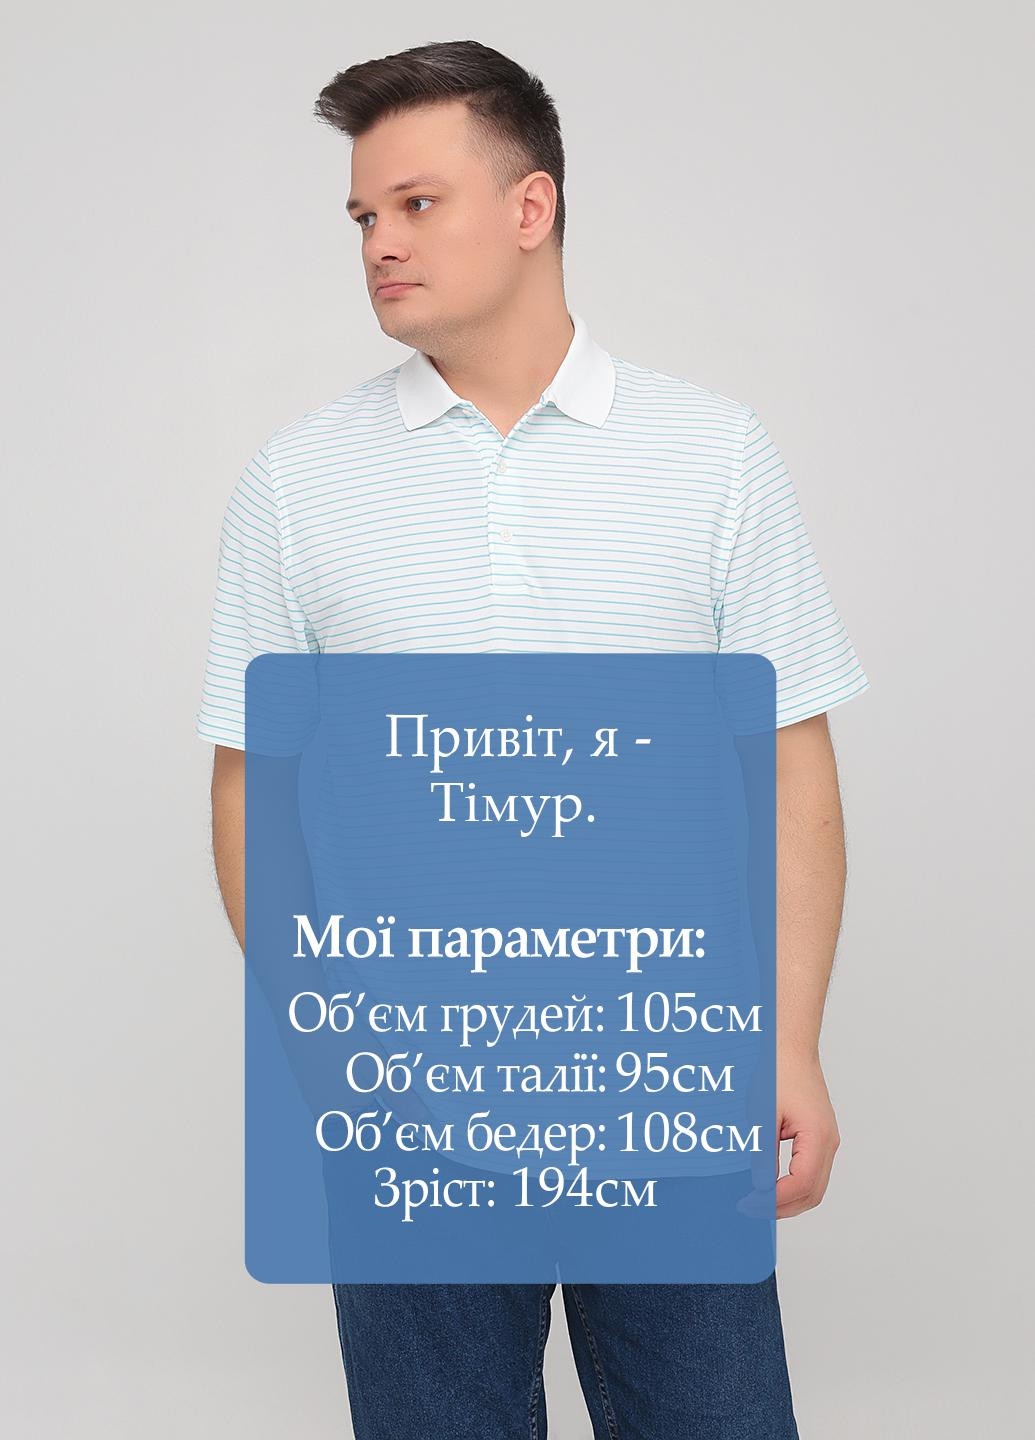 Бирюзовая футболка-поло для мужчин Greg Norman в полоску